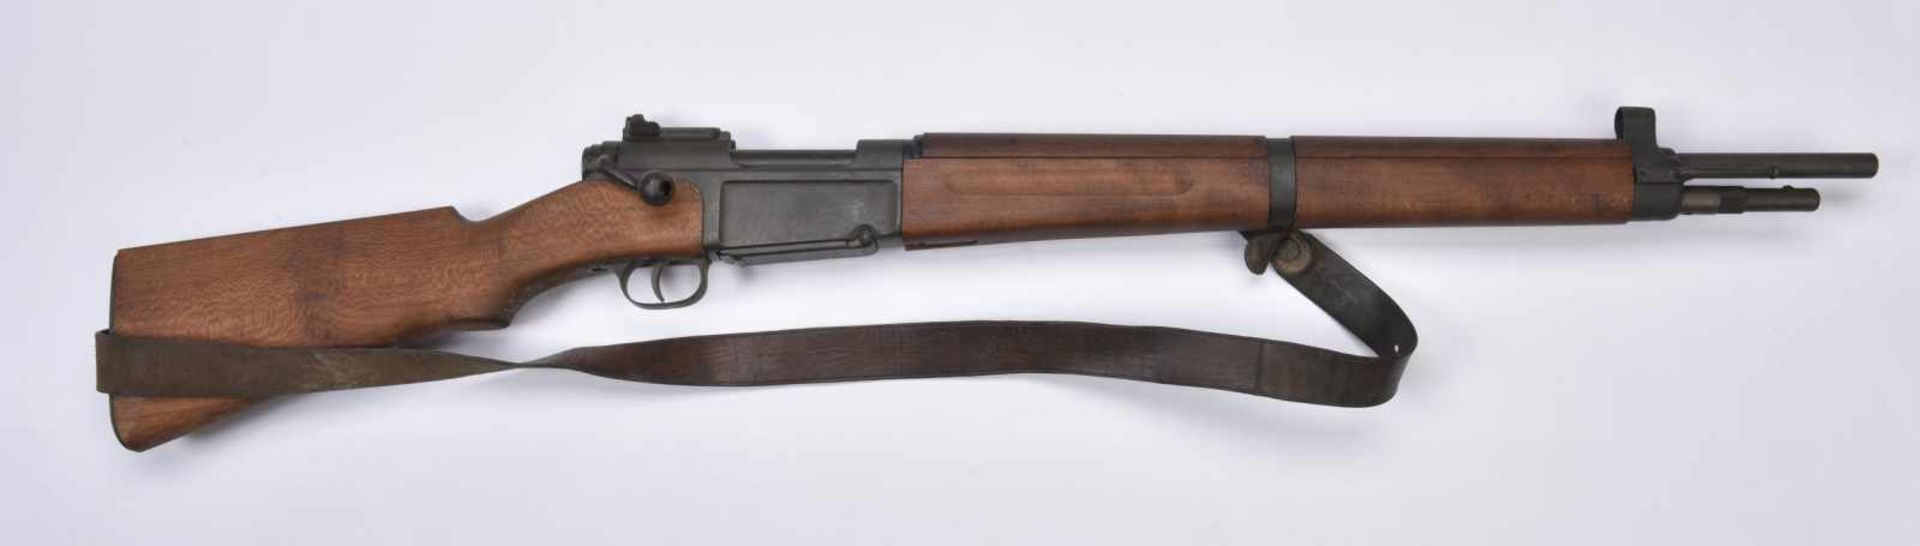 Fusil MAS 36. Crosse en bois. Boîtier marqué « MAS Mle 1936 ». Numéro « M31243 ». Bretelle en